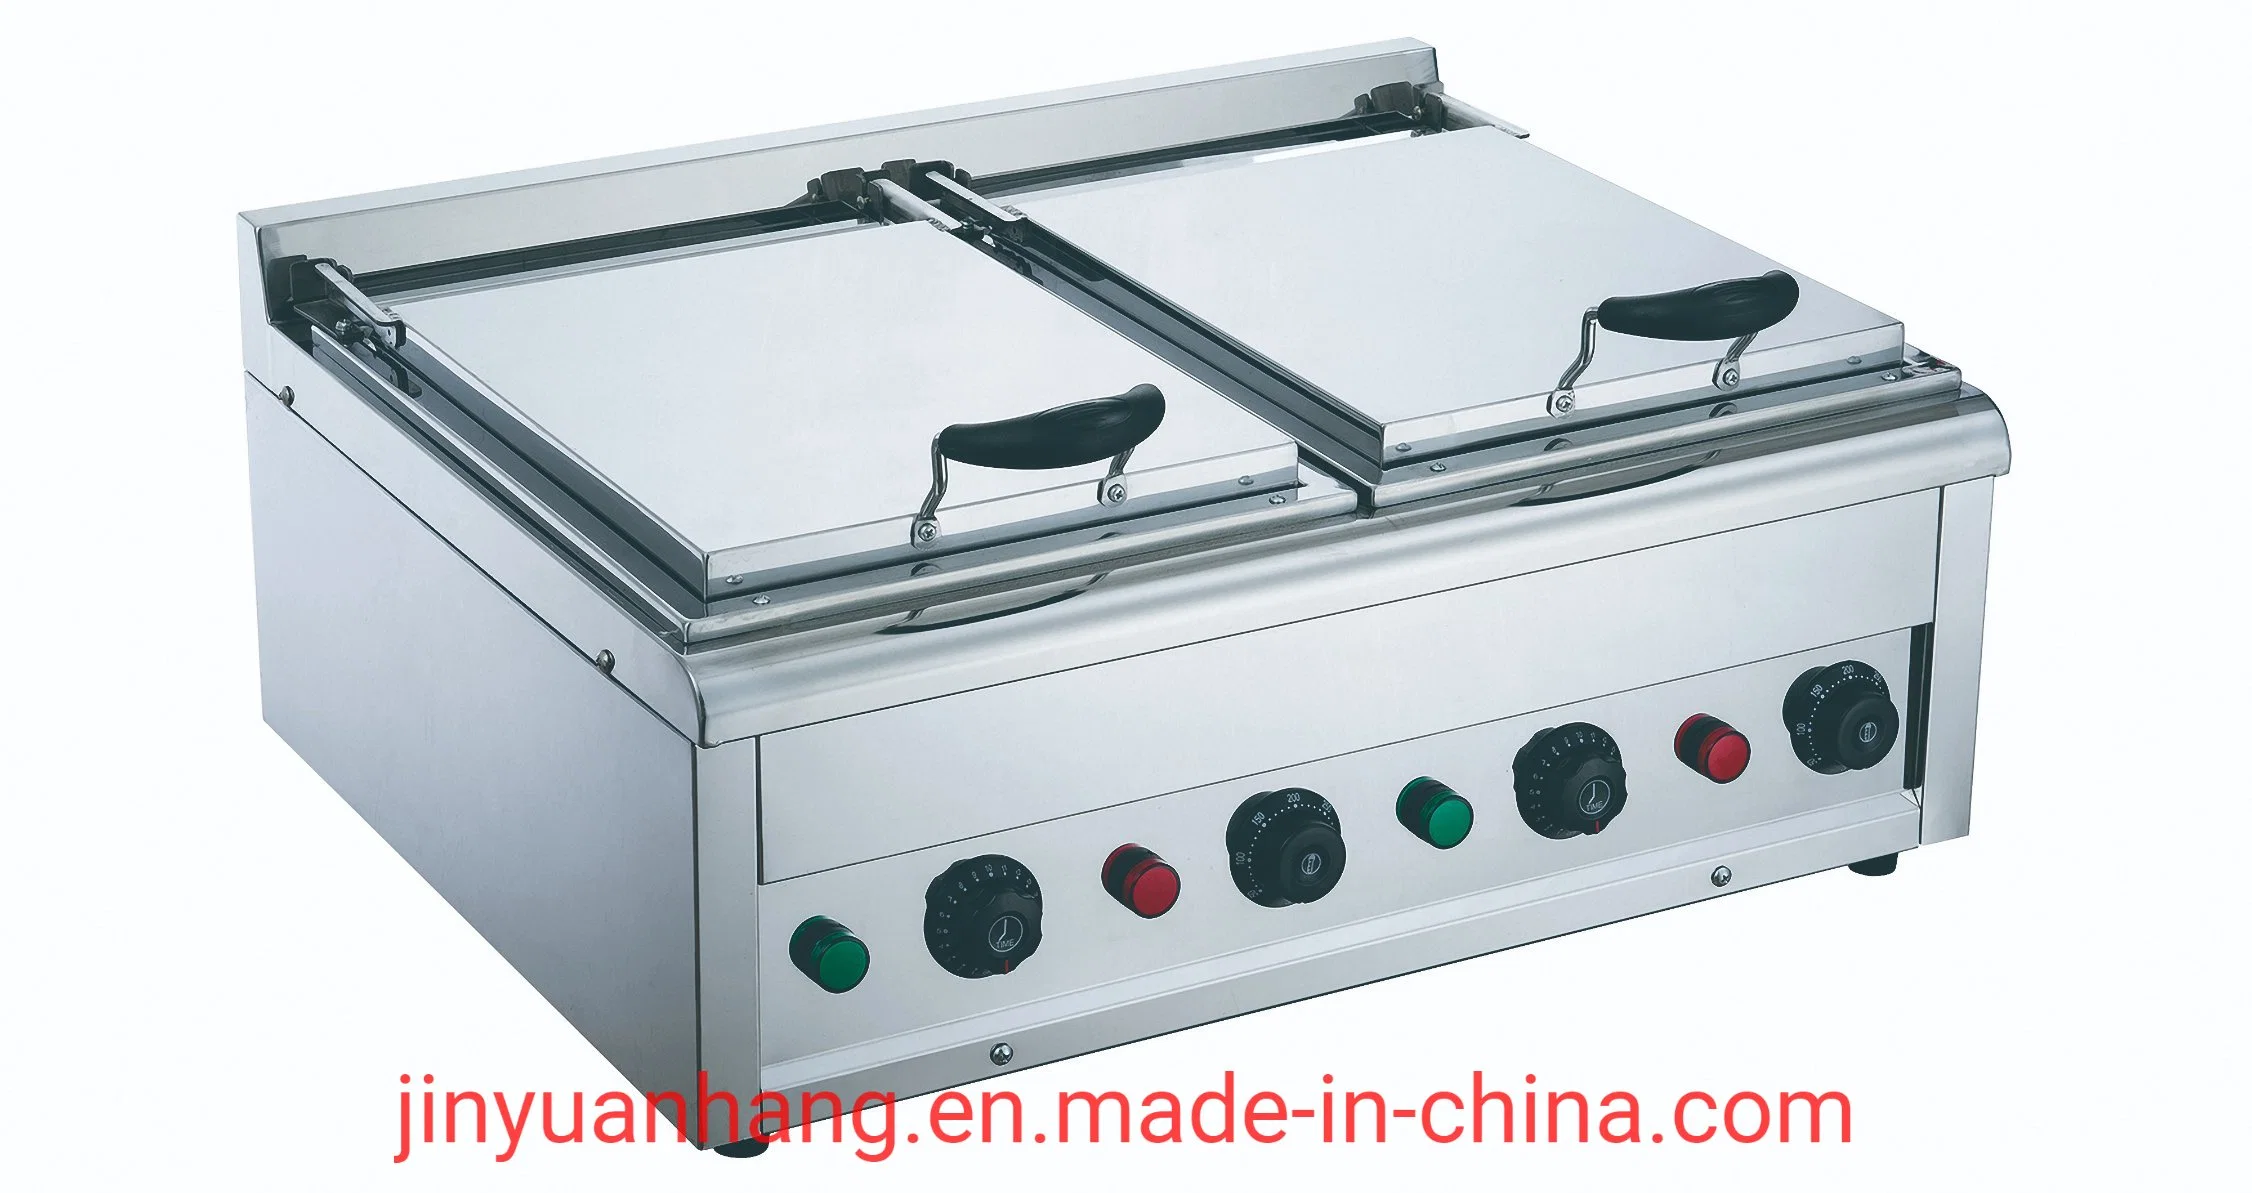 Pan-Fried Pan-Fried пельмени, булочки, Pan-Fried блины - кухонное оборудование для коммерческого использования (дважды pot) для настольных ПК электрической сковороде Bdh-2pne.